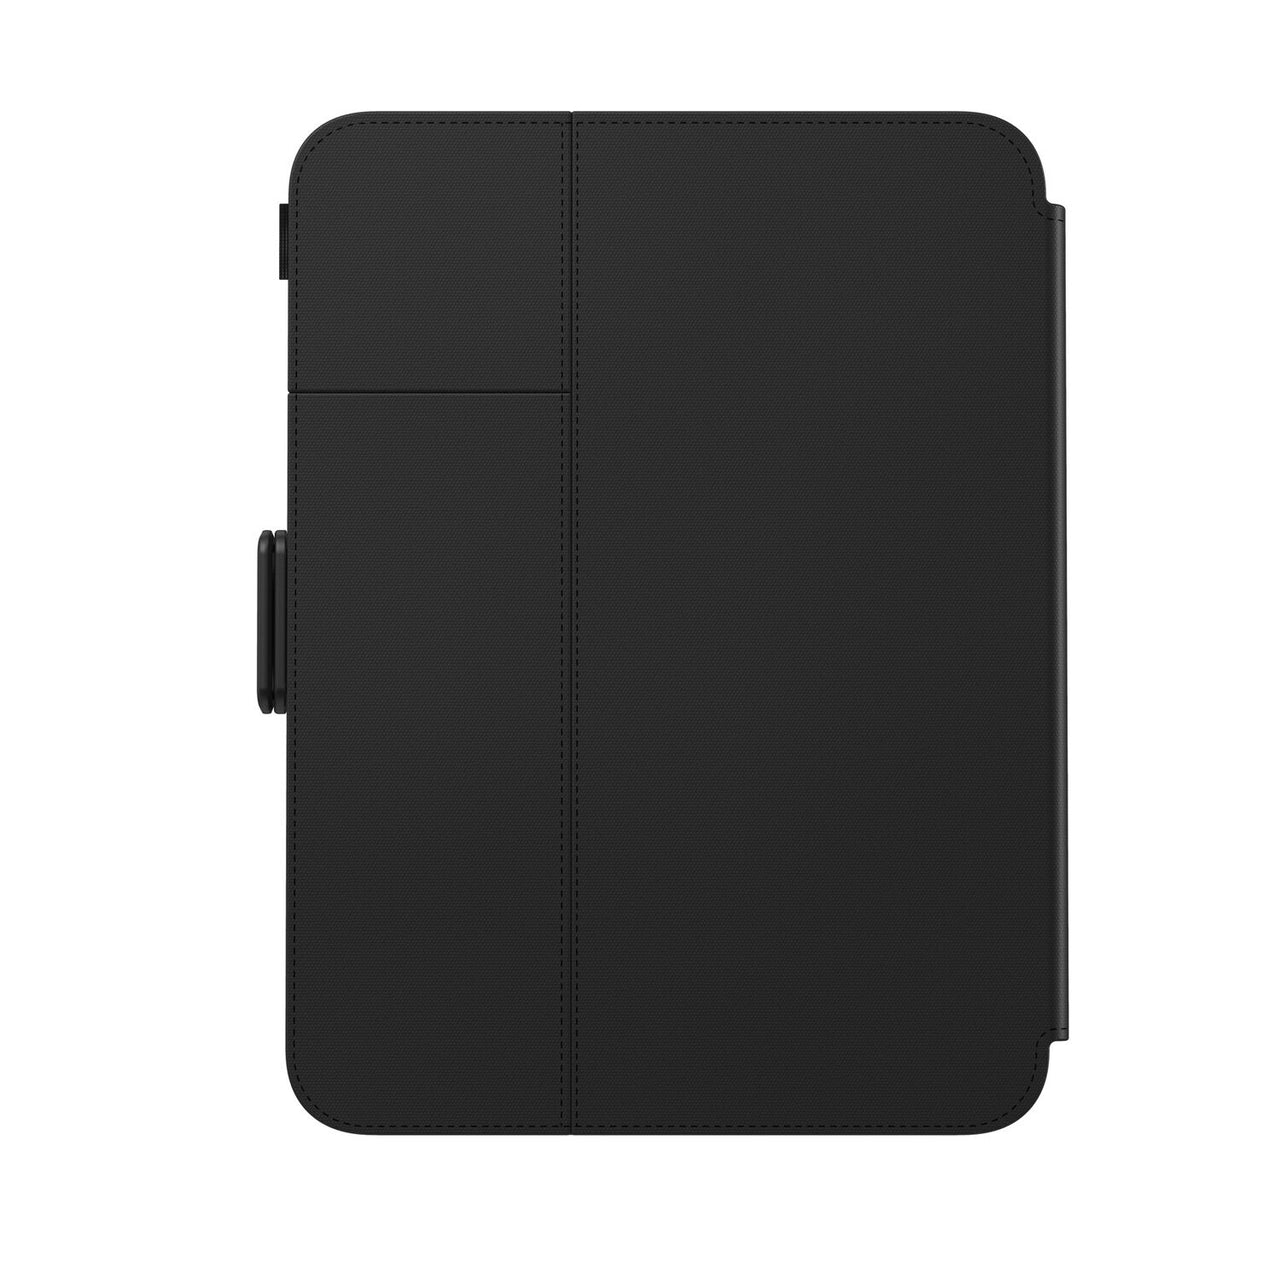 Speck balance folio case for ipad mini 6th Gen (2021) - Black